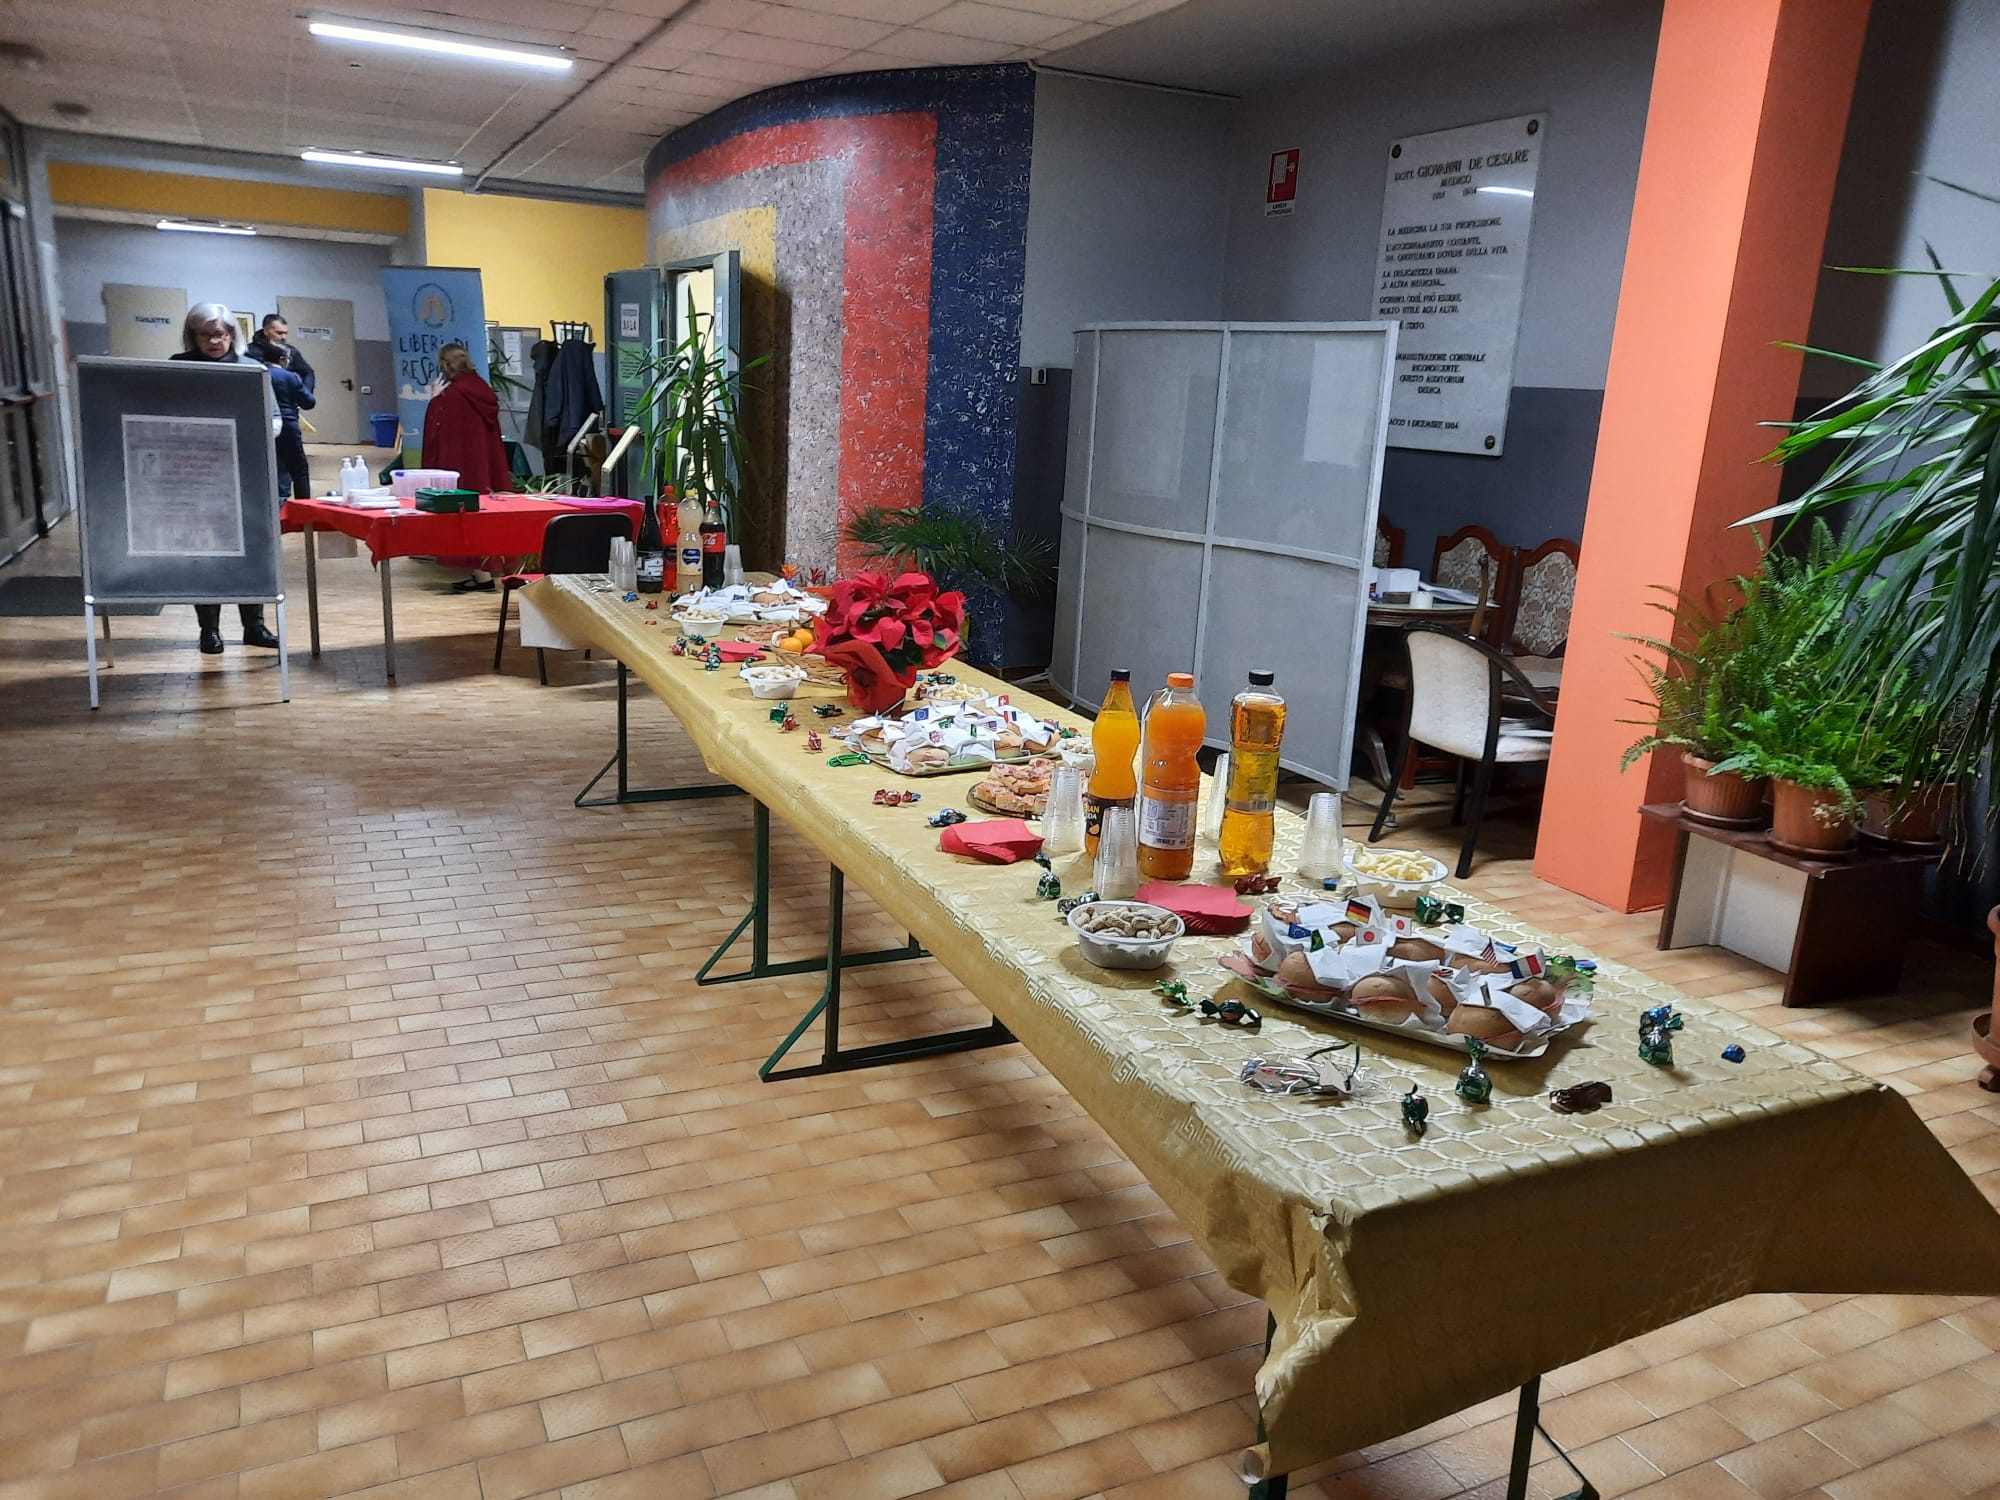 07 - Il buffet preparato dalle volontarie ALPI